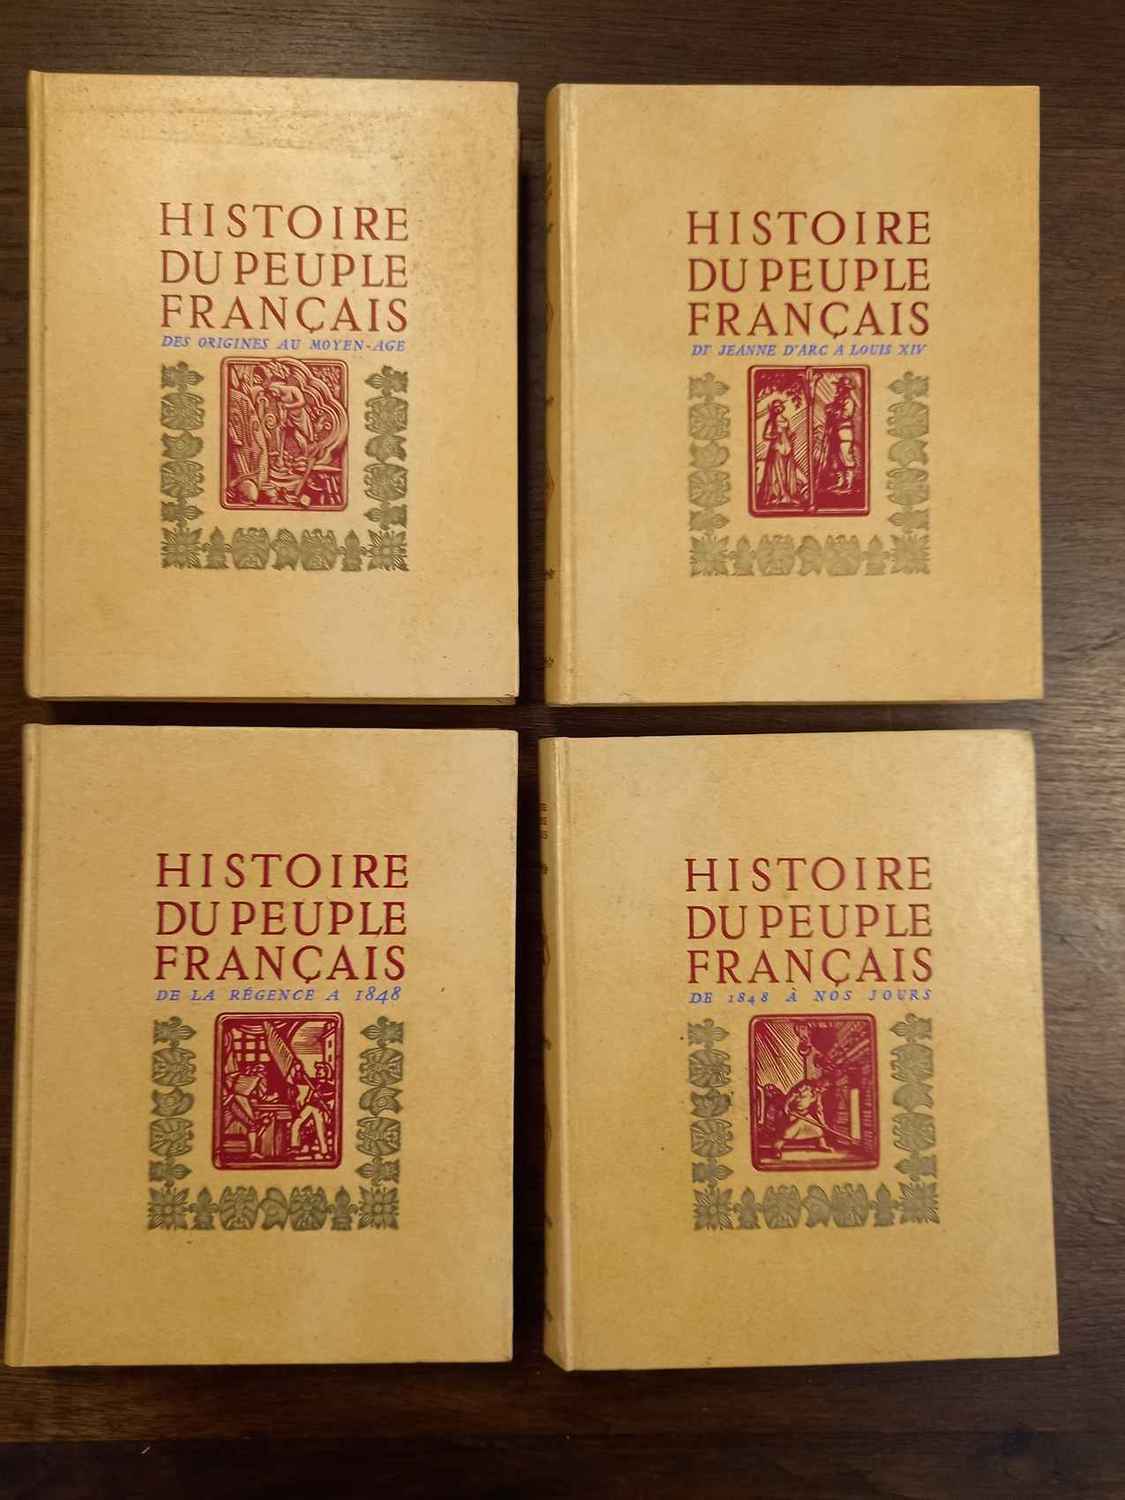 EmpireCostume - Histoire du peuple français en 4 tomes. Nouvelle